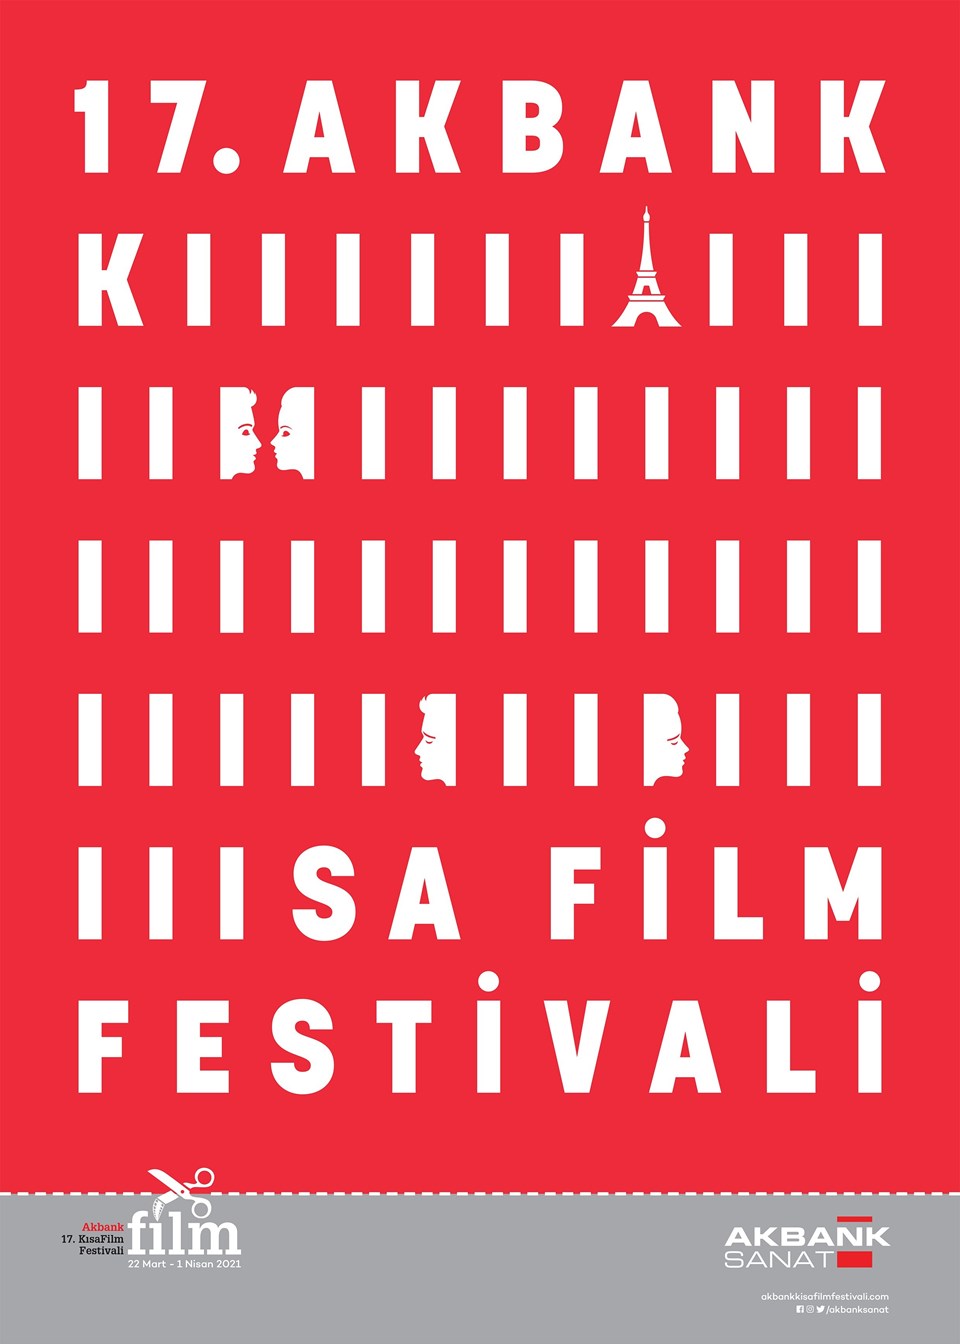 17. Akbank Kısa Film Festivali jüri üyeleri ve yarışma filmleri açıklandı - 1